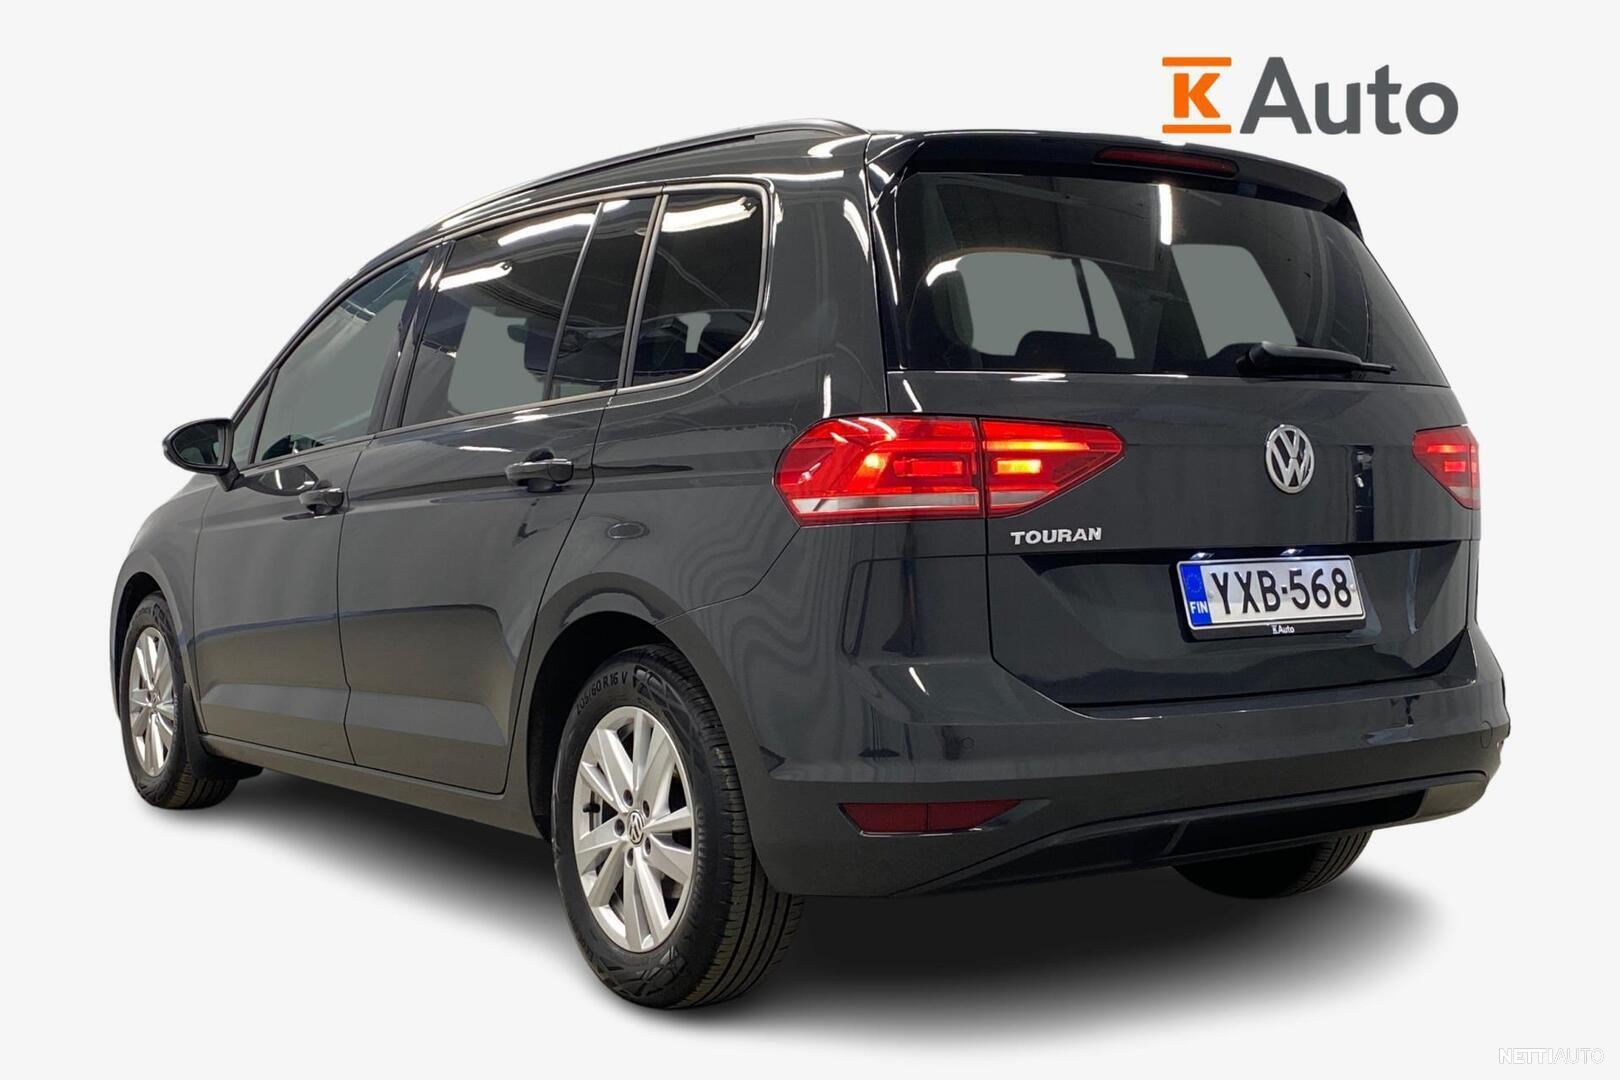 VW Touran 2.0 TDI DSG automatic review